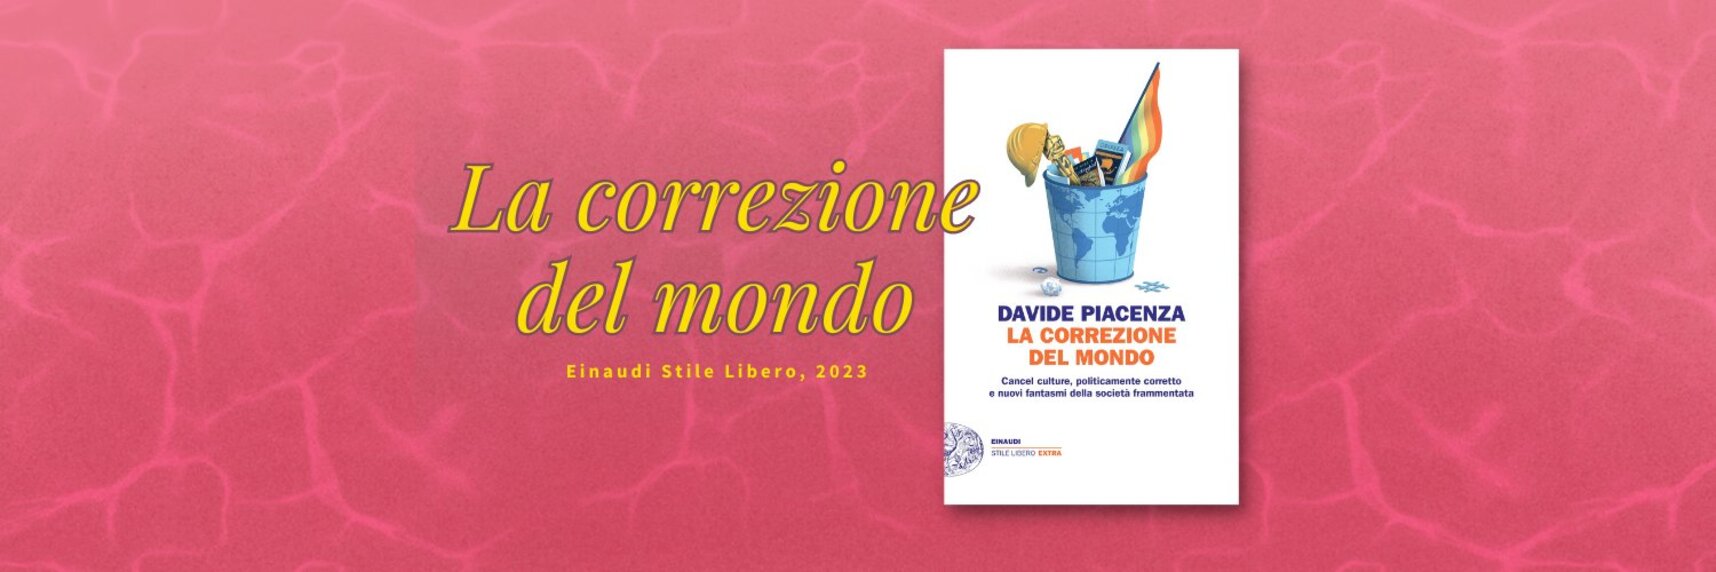 Cancel culture, politicamente corretto, polarizzazione online: intervista a Davide Piacenza